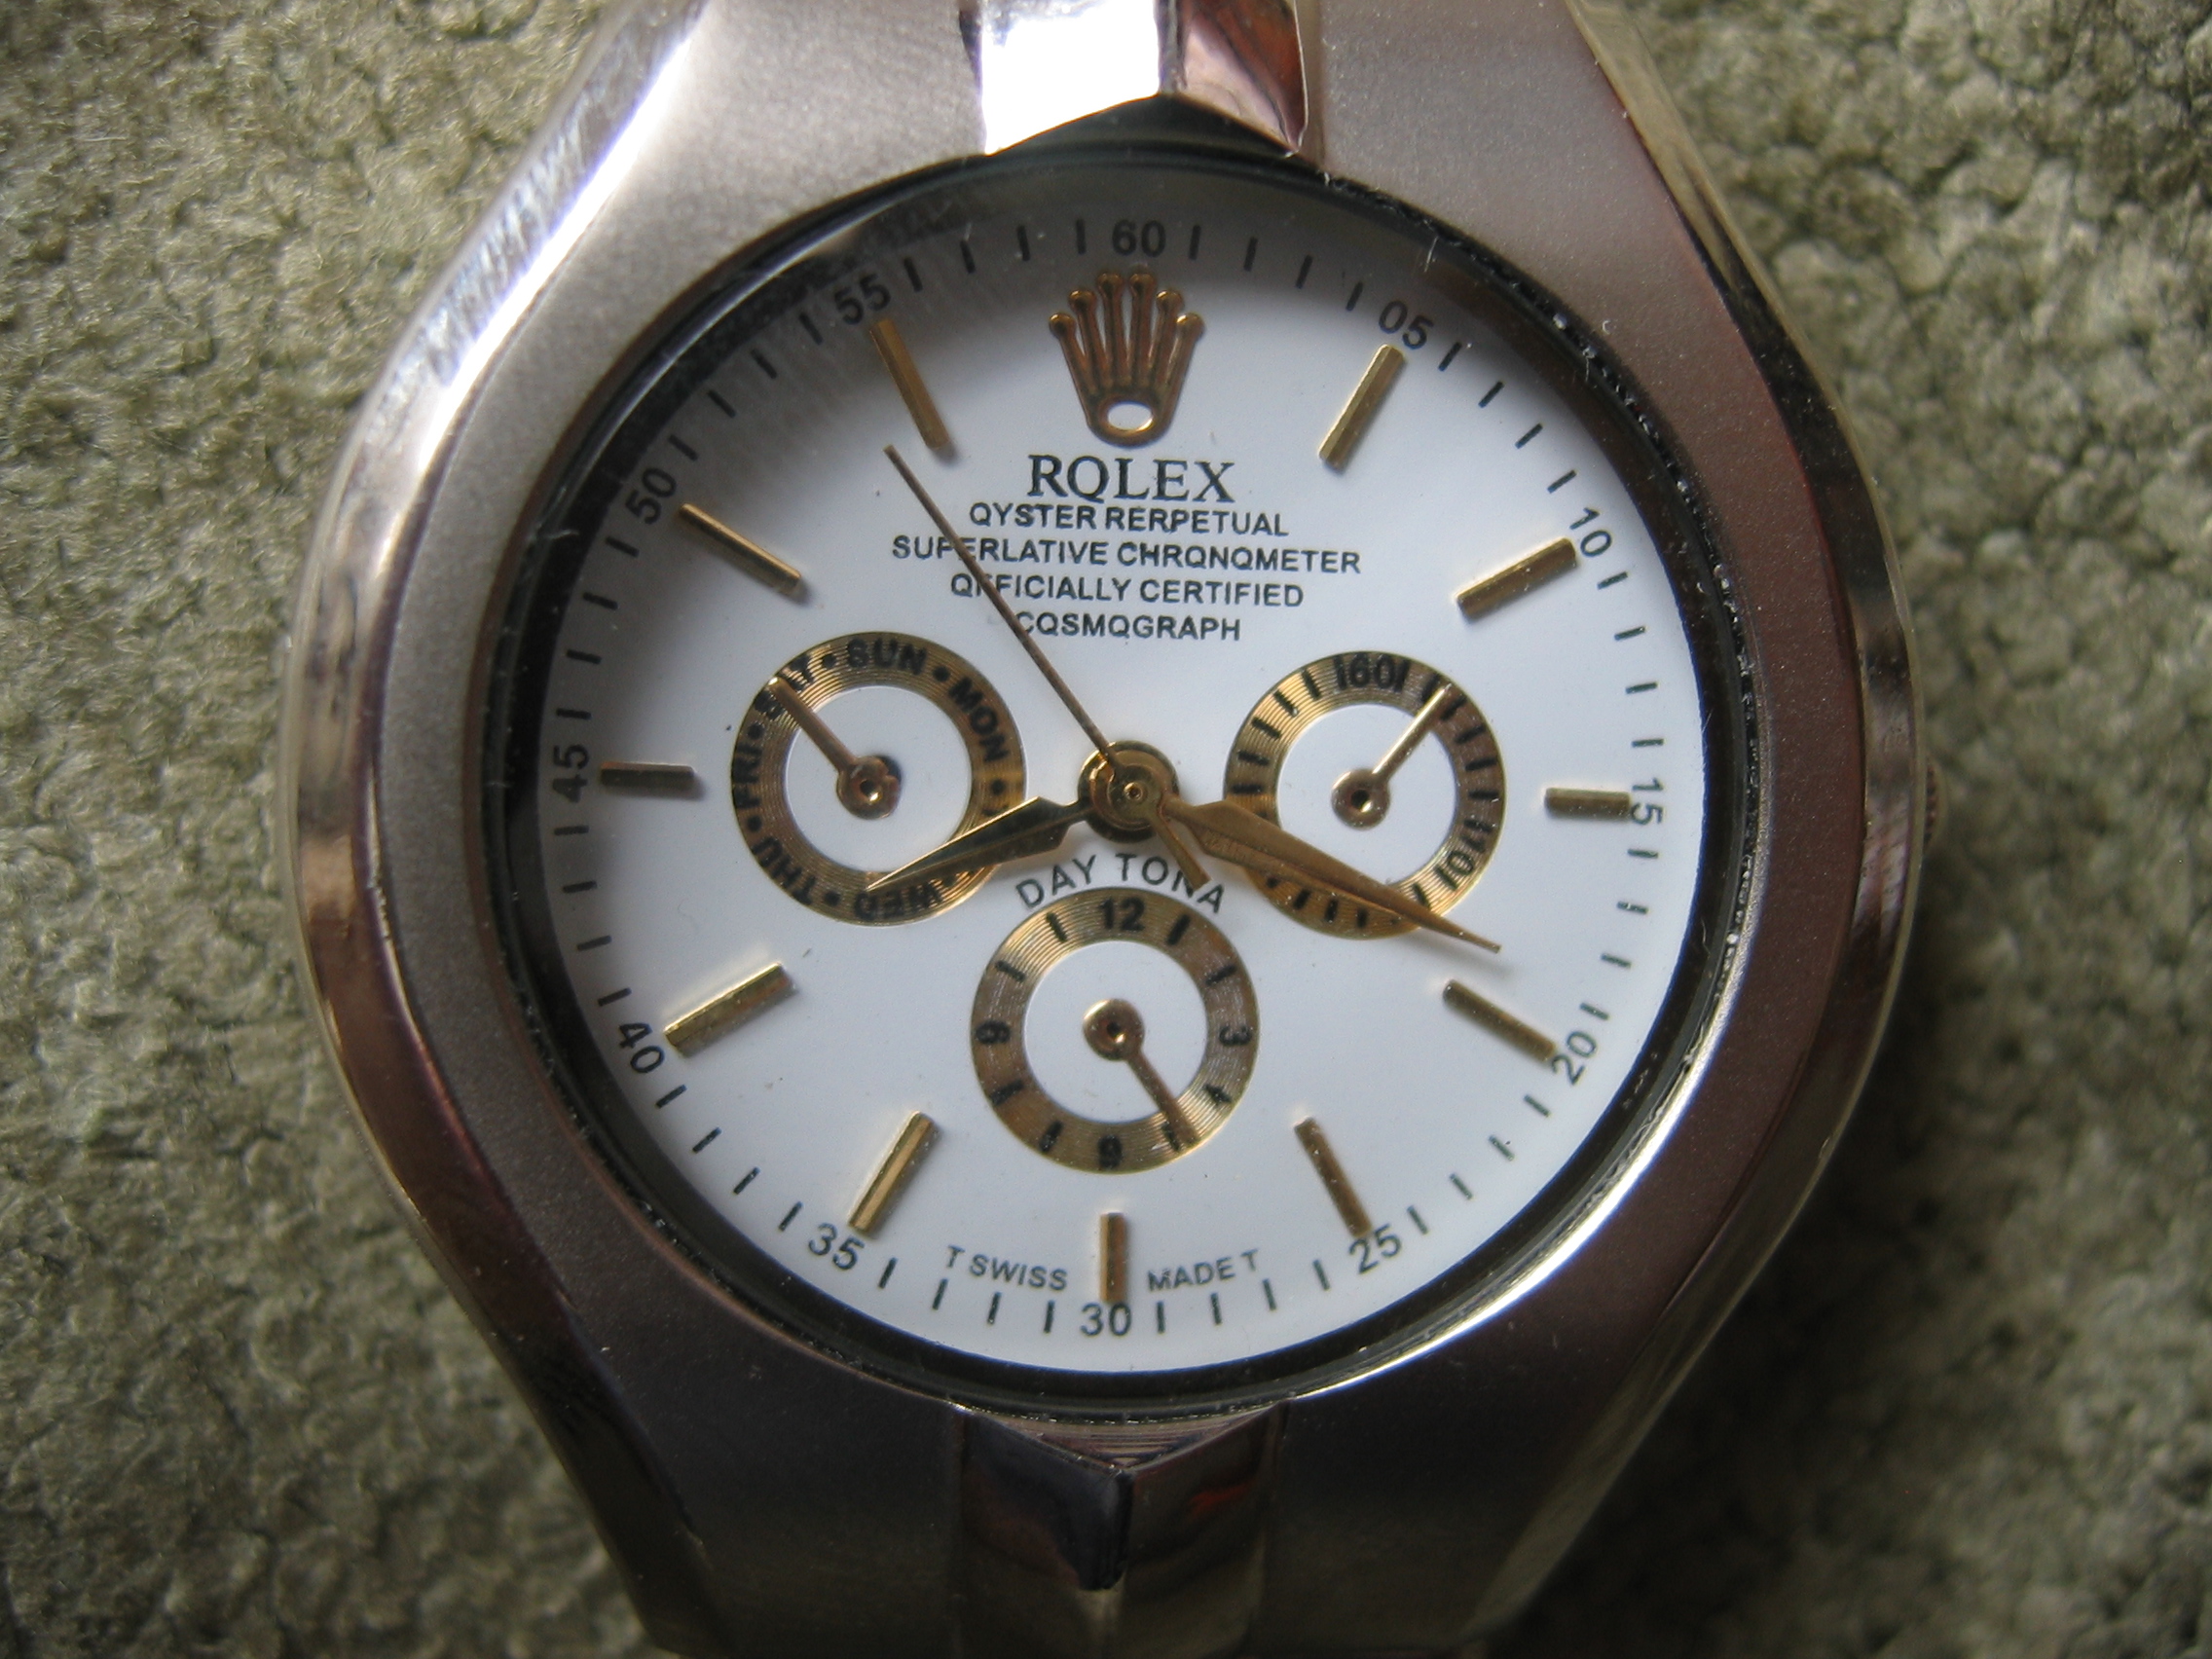 Counterfeit watch - Wikipedia